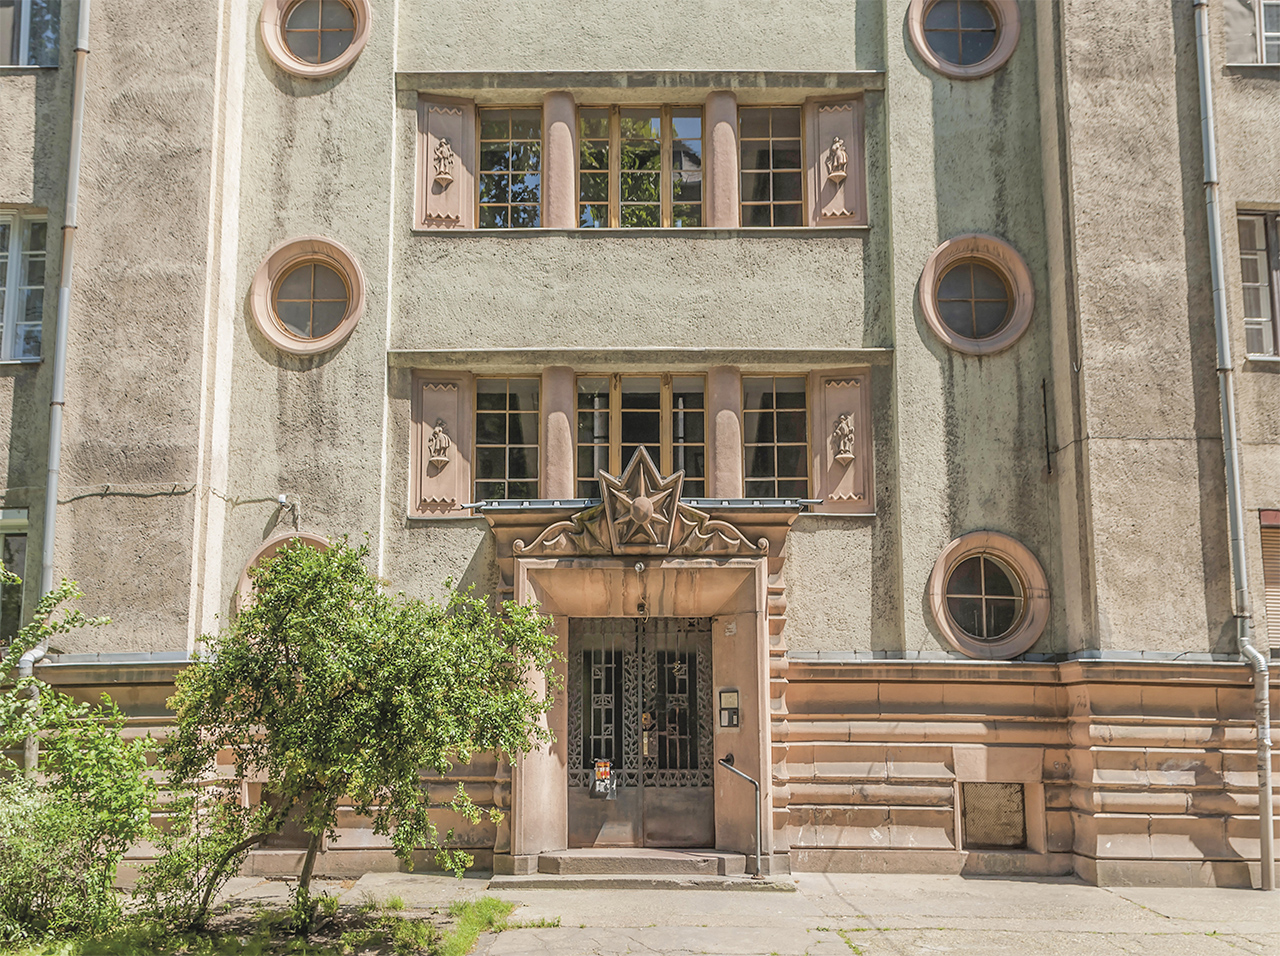 Gyöngyösi utca 4., Budapesti Székesfőváros kislakásos bérháza, Freund Dezső, 1925–1926 Az első nagyobb art deco épület a korszak Magyarországán, mely a főváros építészeti törvényei miatt csak egy külvárosi utcában valósulhatott meg. Külső dekoratív motívumai és a bejárati homlokzat tagolása a német nyelvterületről és a bécsi Josef Hoffmann korabeli munkásságából származik.